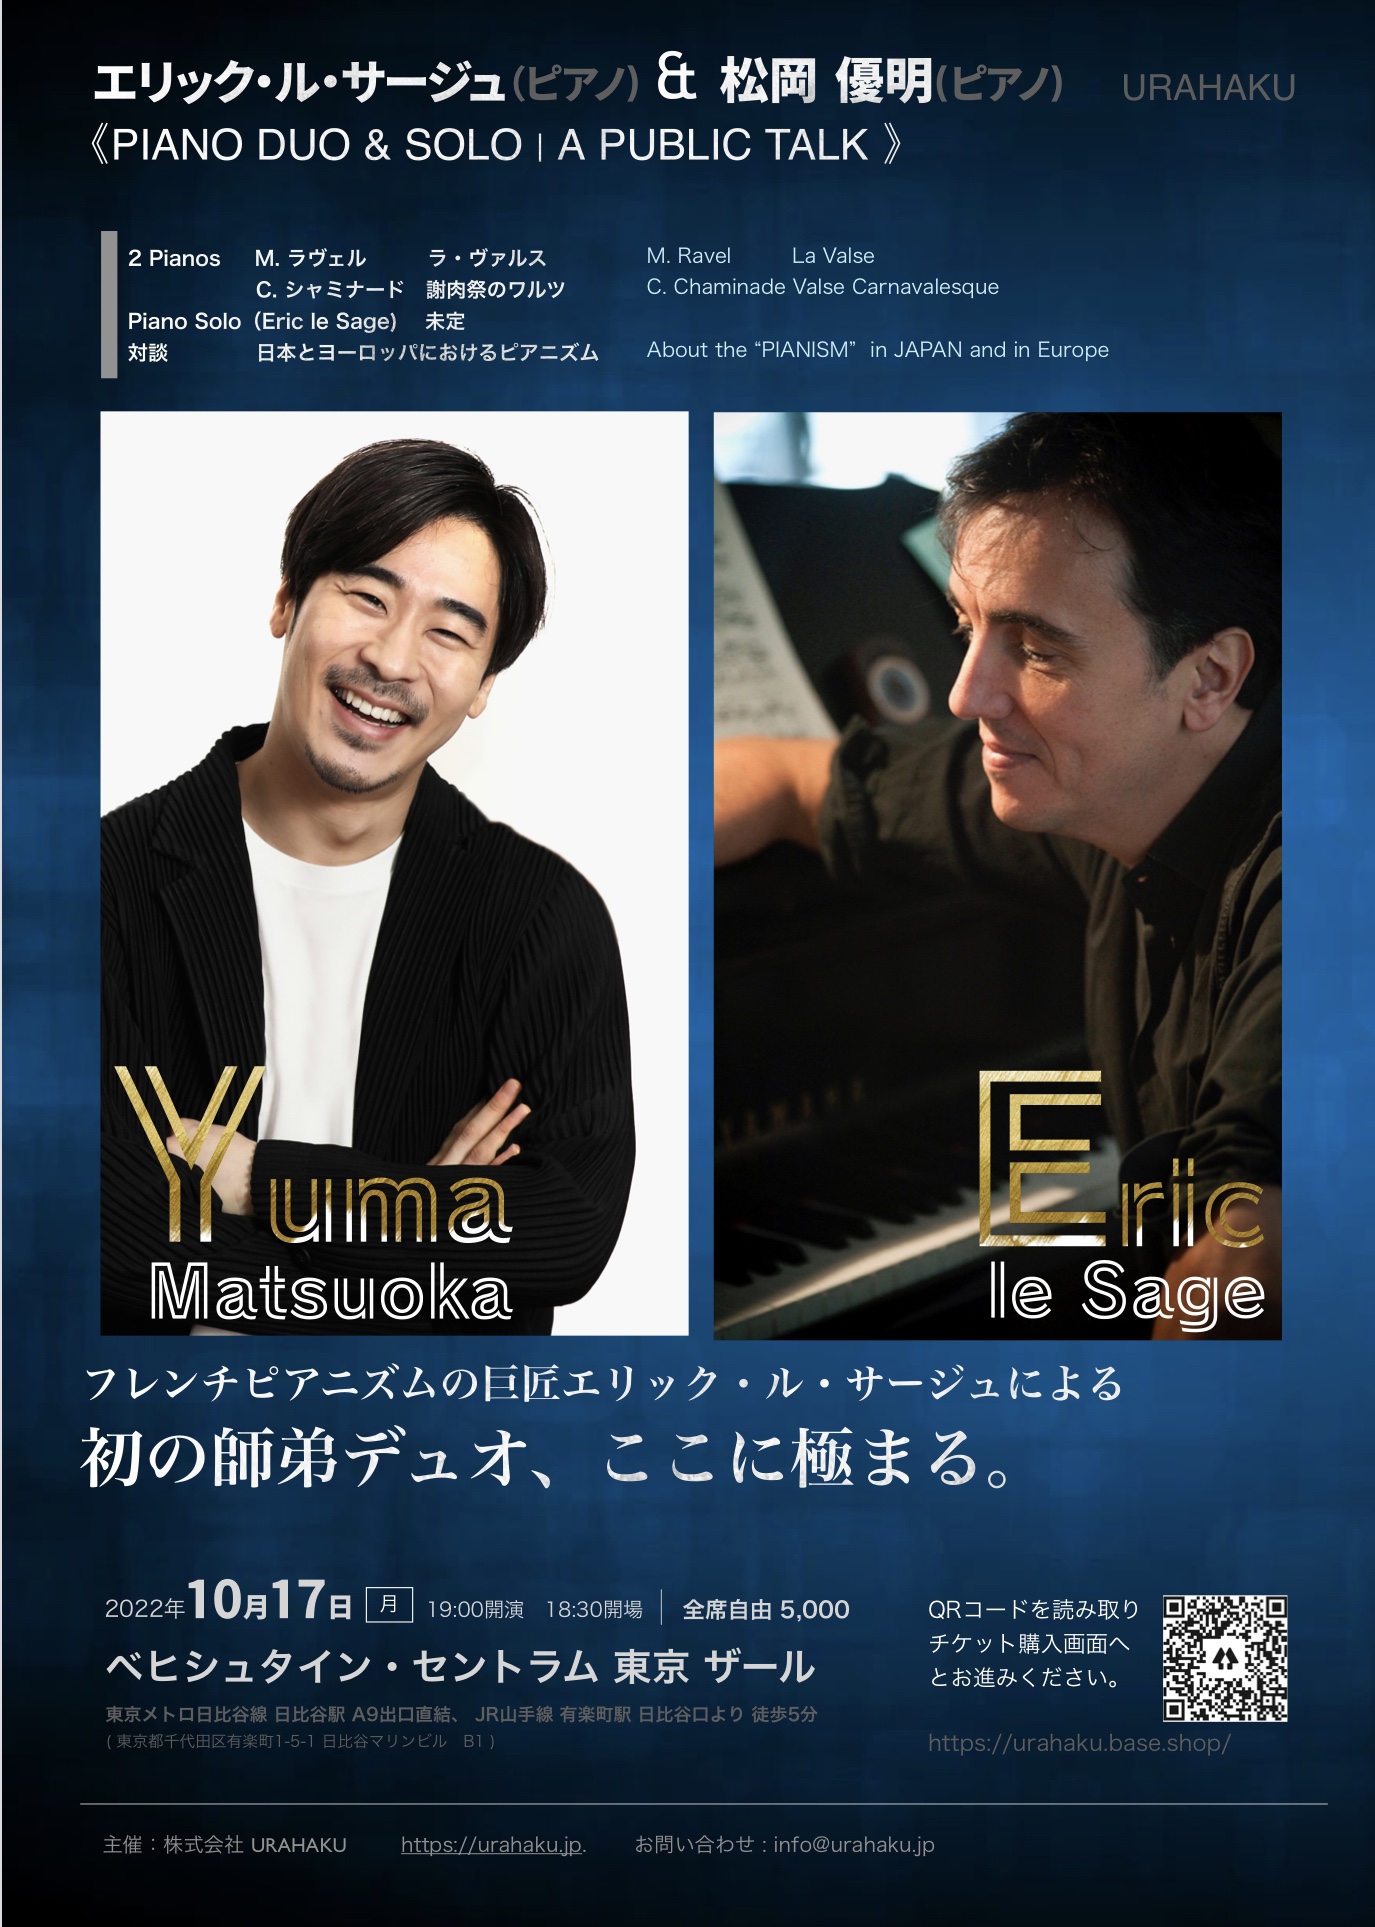 【出演情報】エリック・ル・サージュu0026松岡優明 Piano Duo/Public Talk | 松岡音楽教室